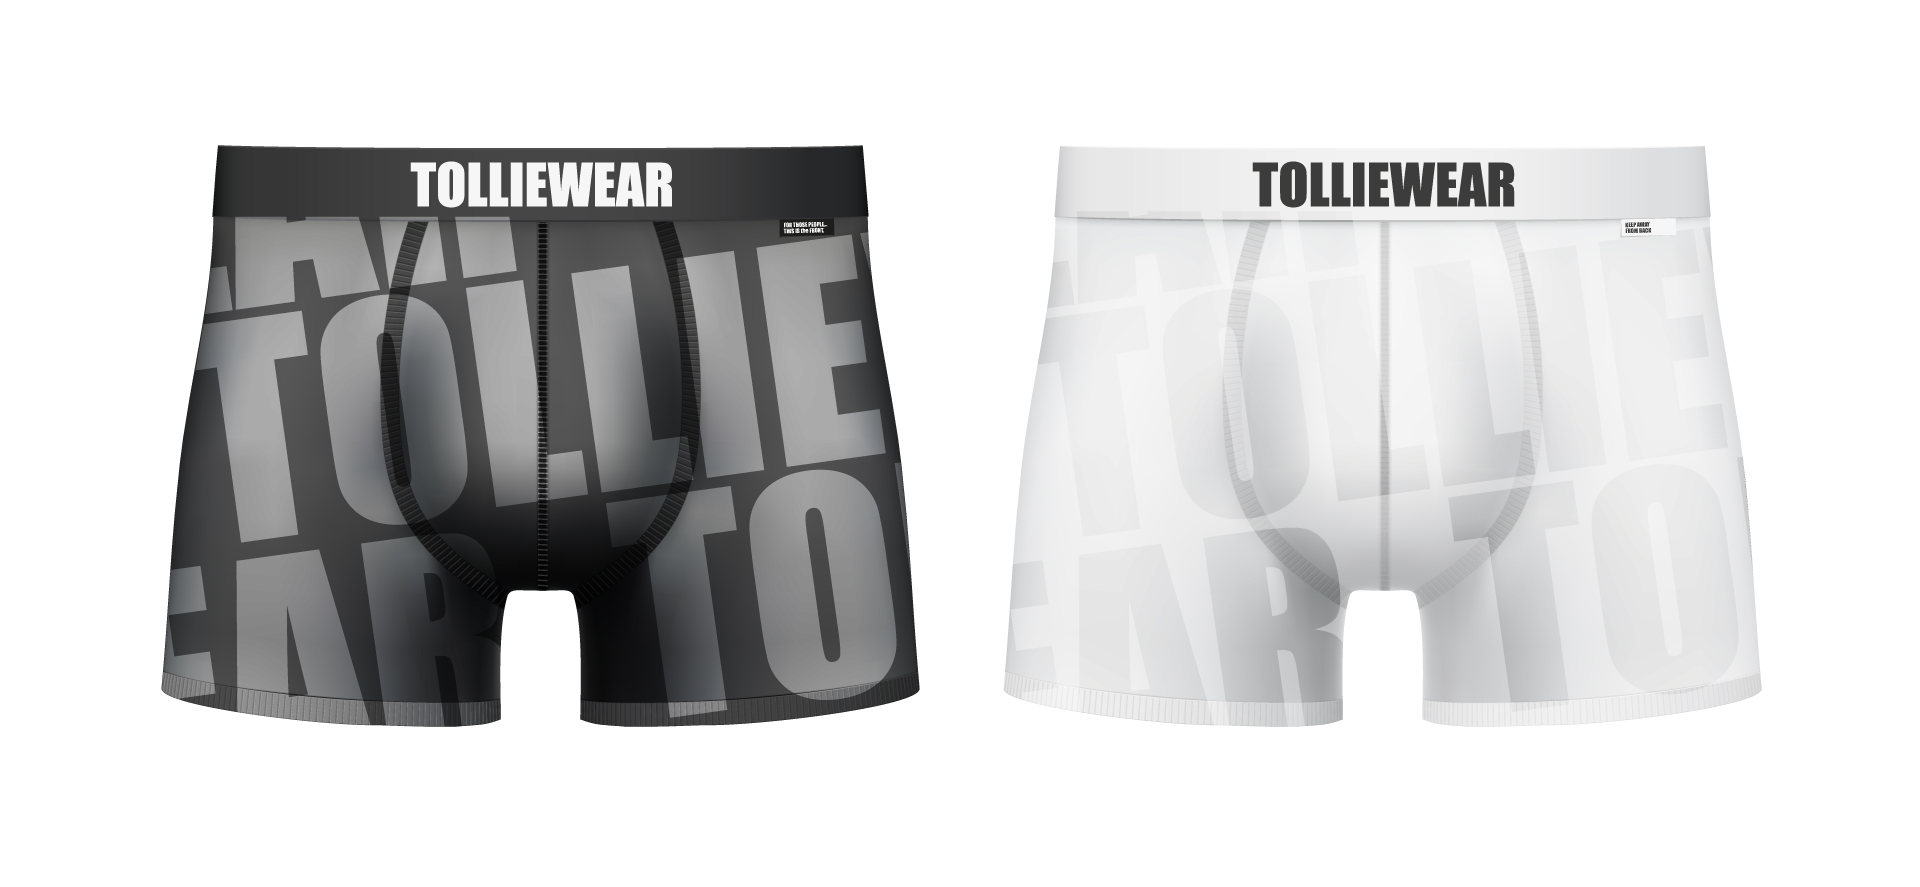 Tolliewear boxershorts brand